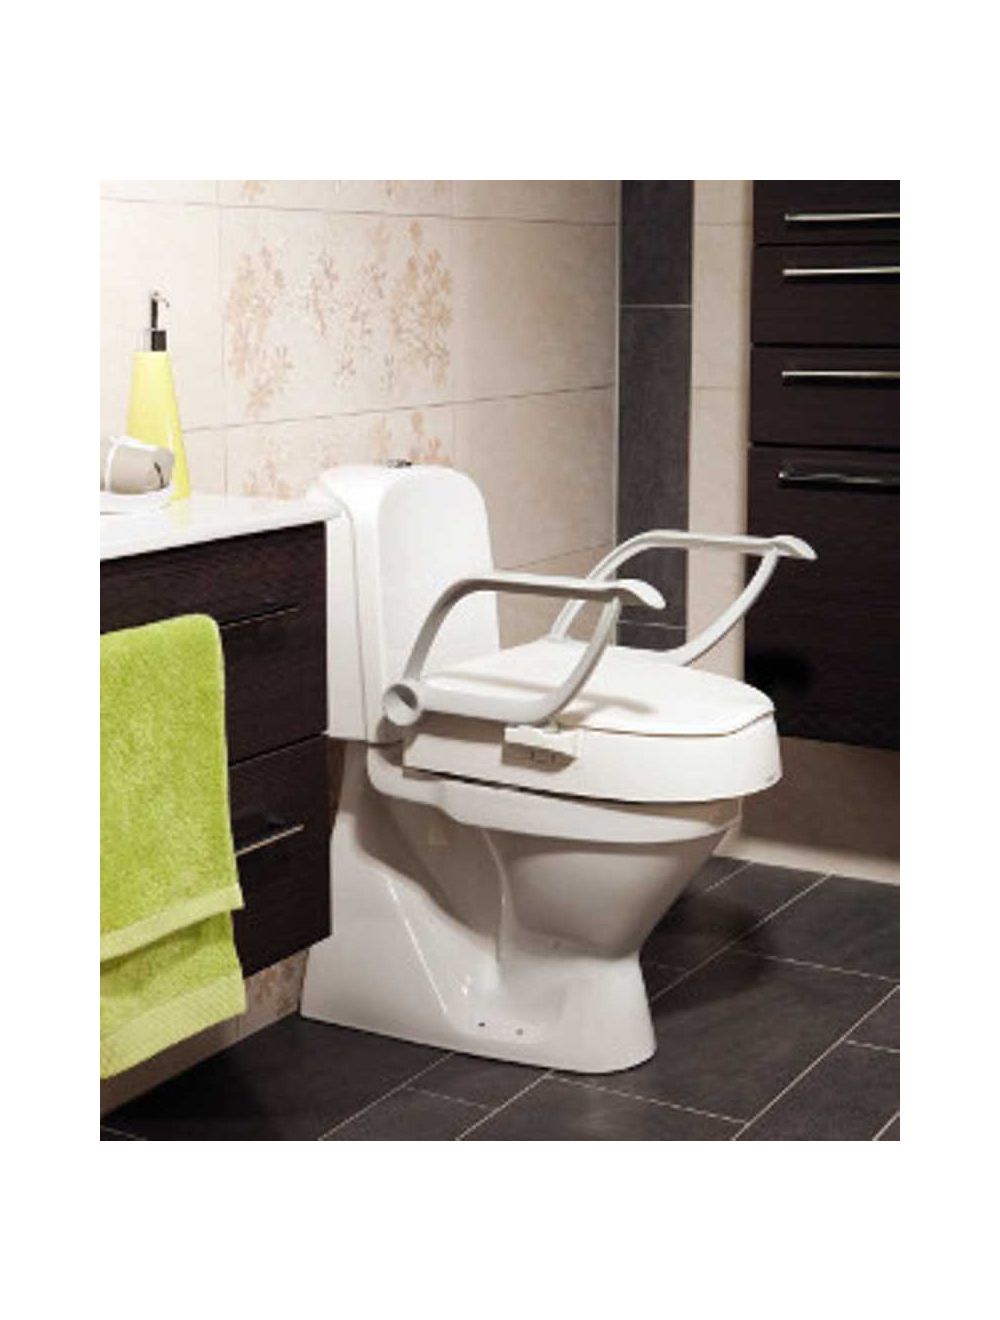 Bains de siège pour toilettes - Bassin de bain Sitz portable pour